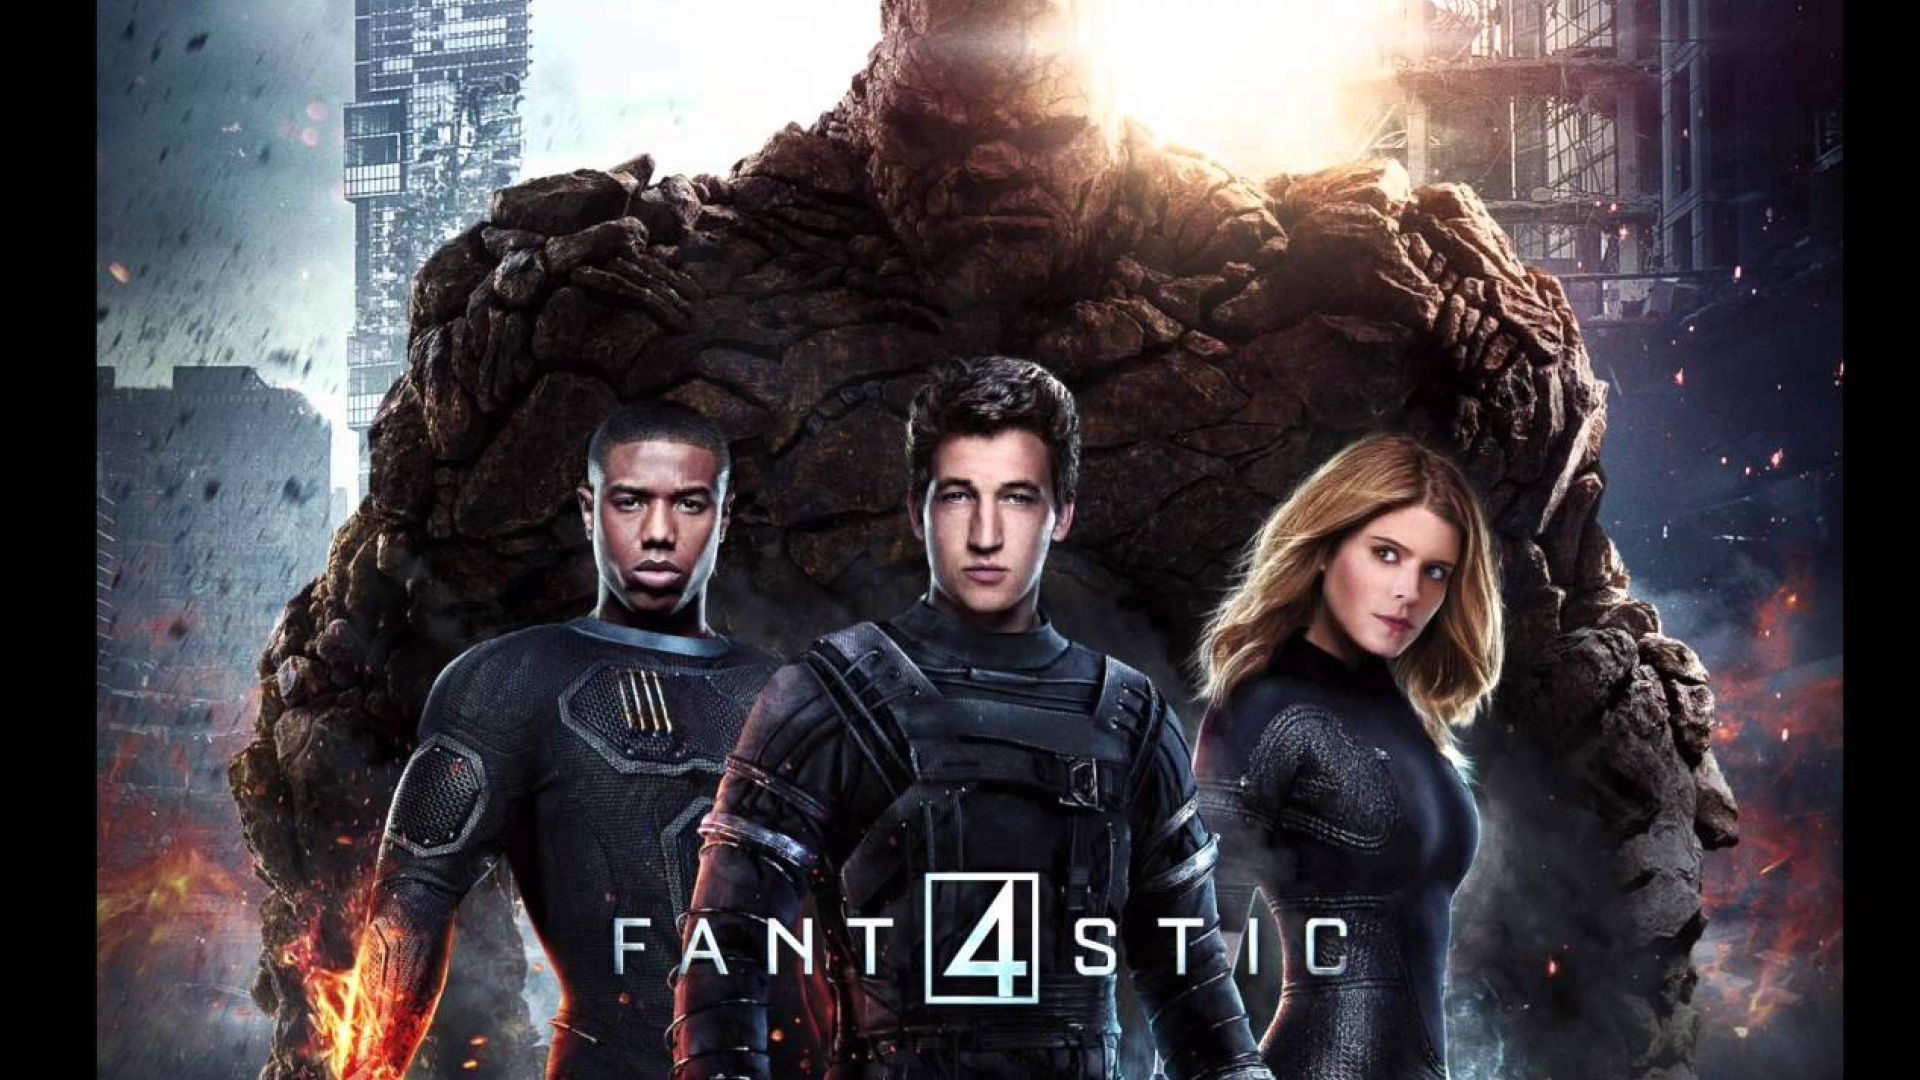 REVIEW: Fantastic Four